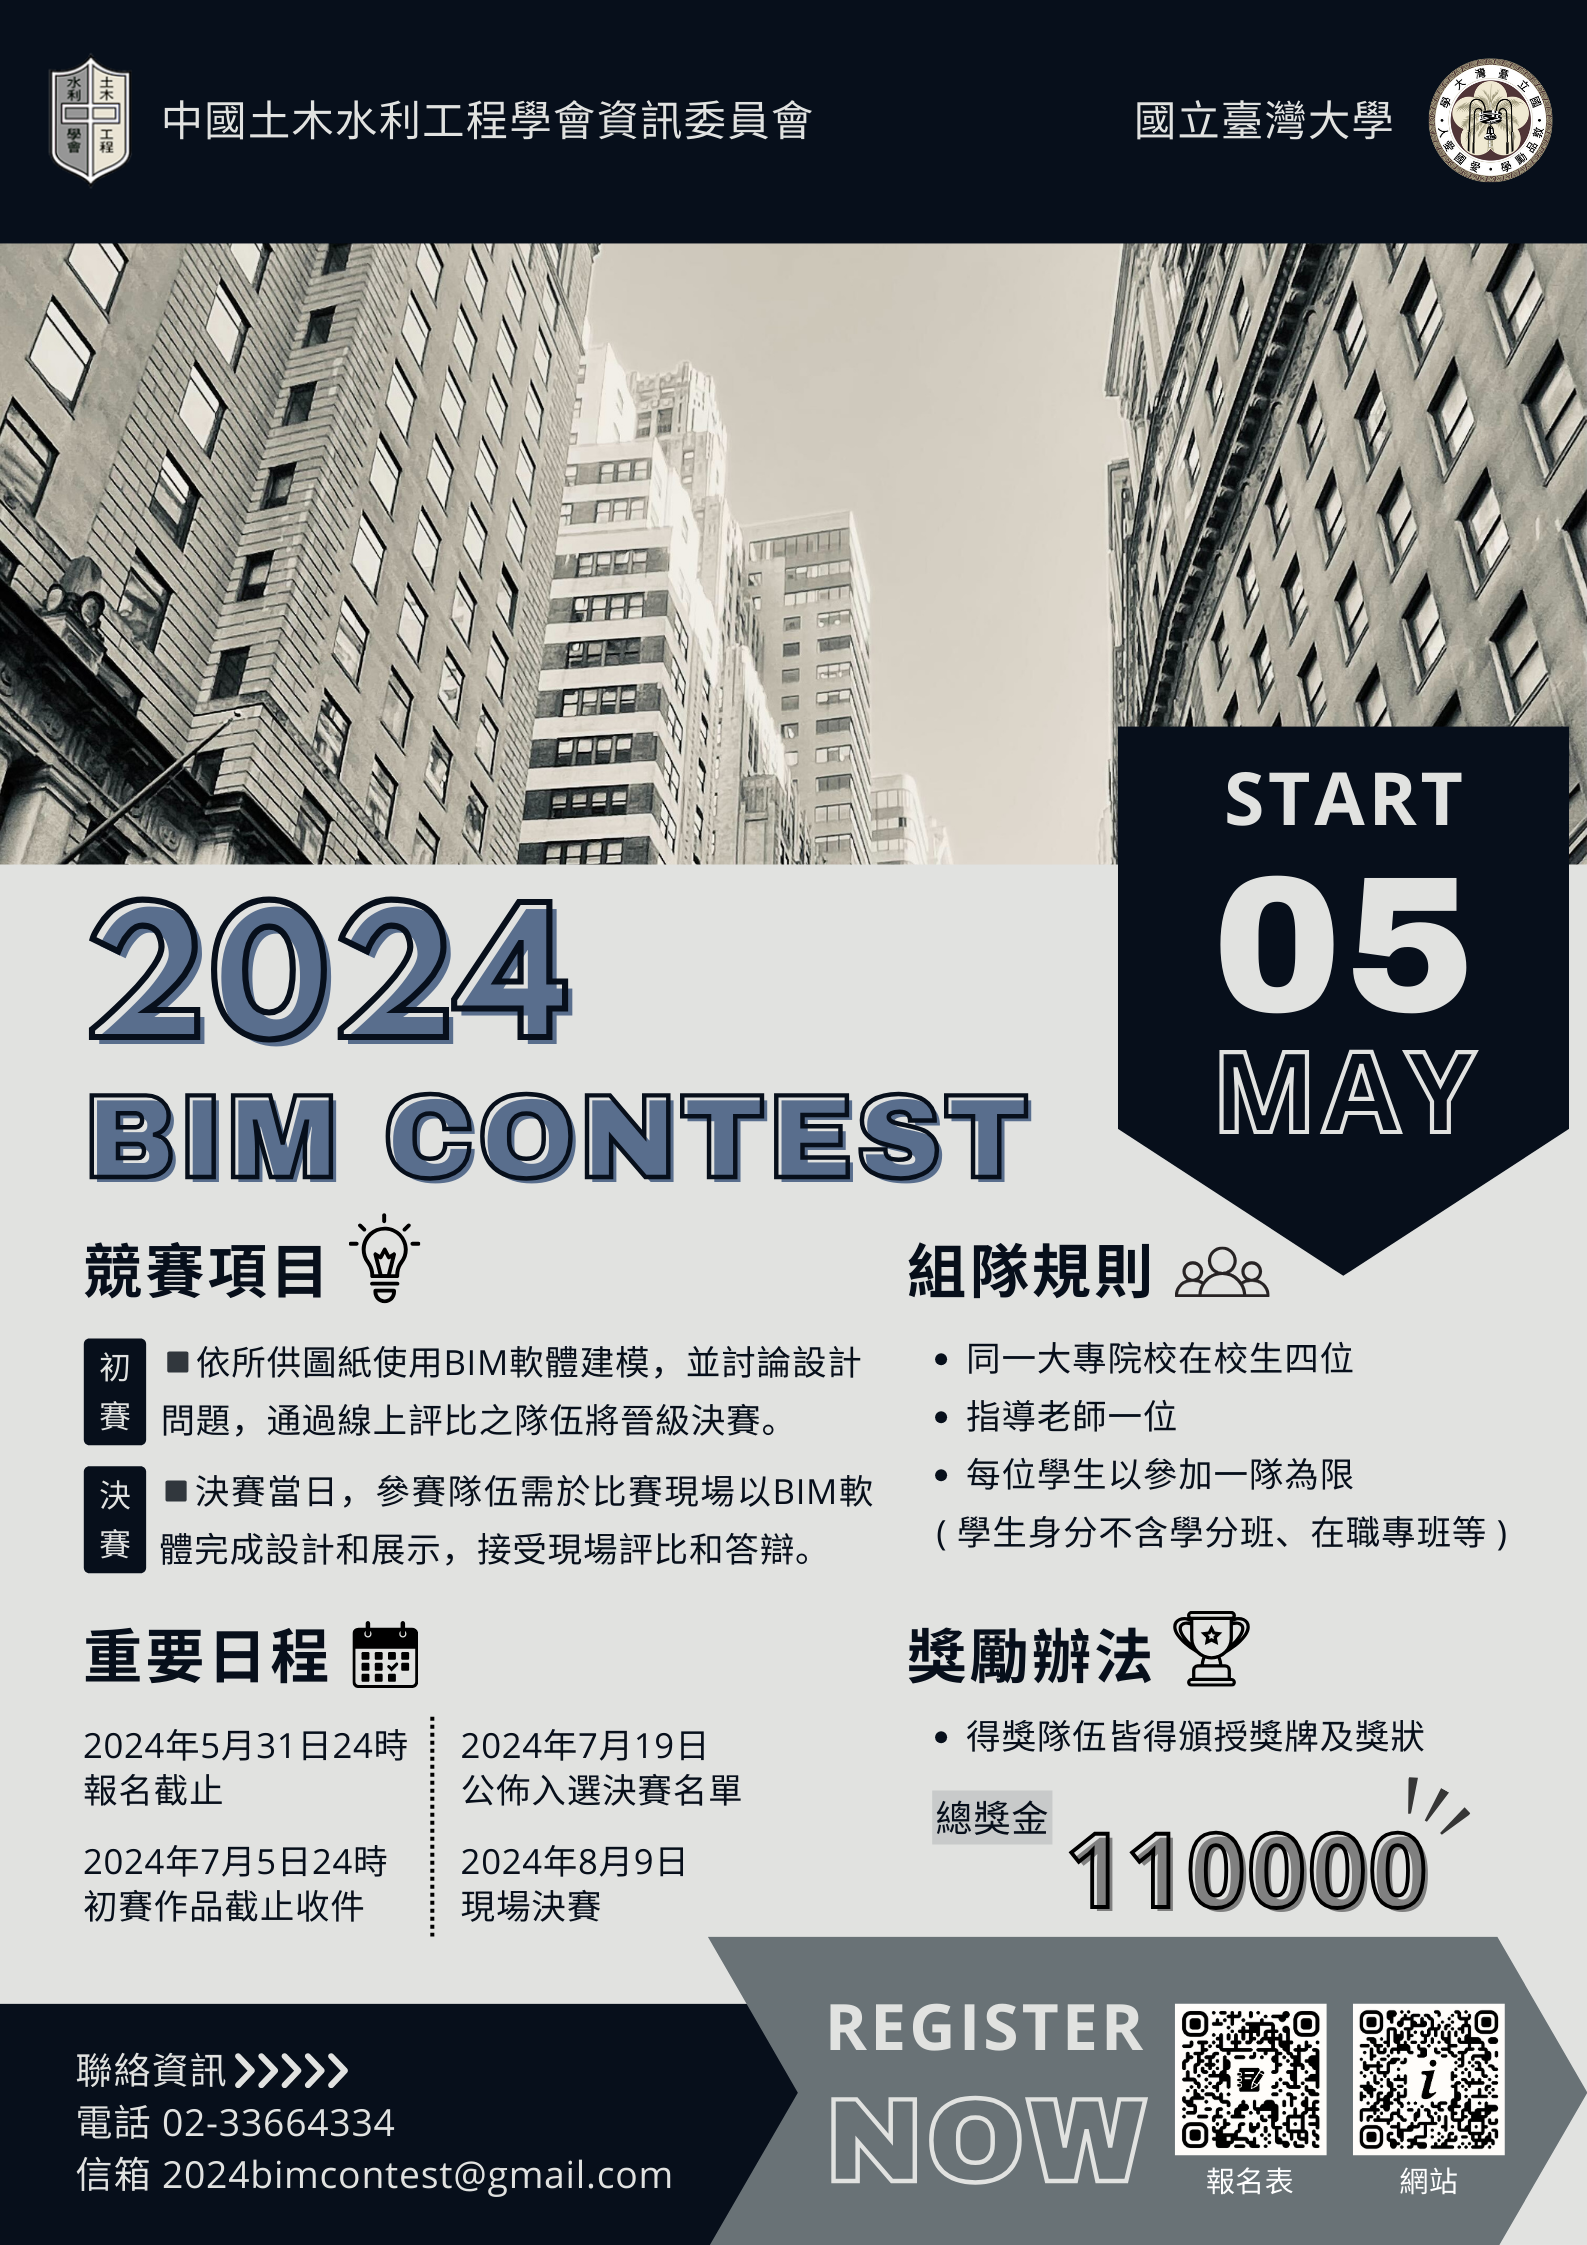 中國土木水利工程學會 2024 BIM CONTEST 競賽